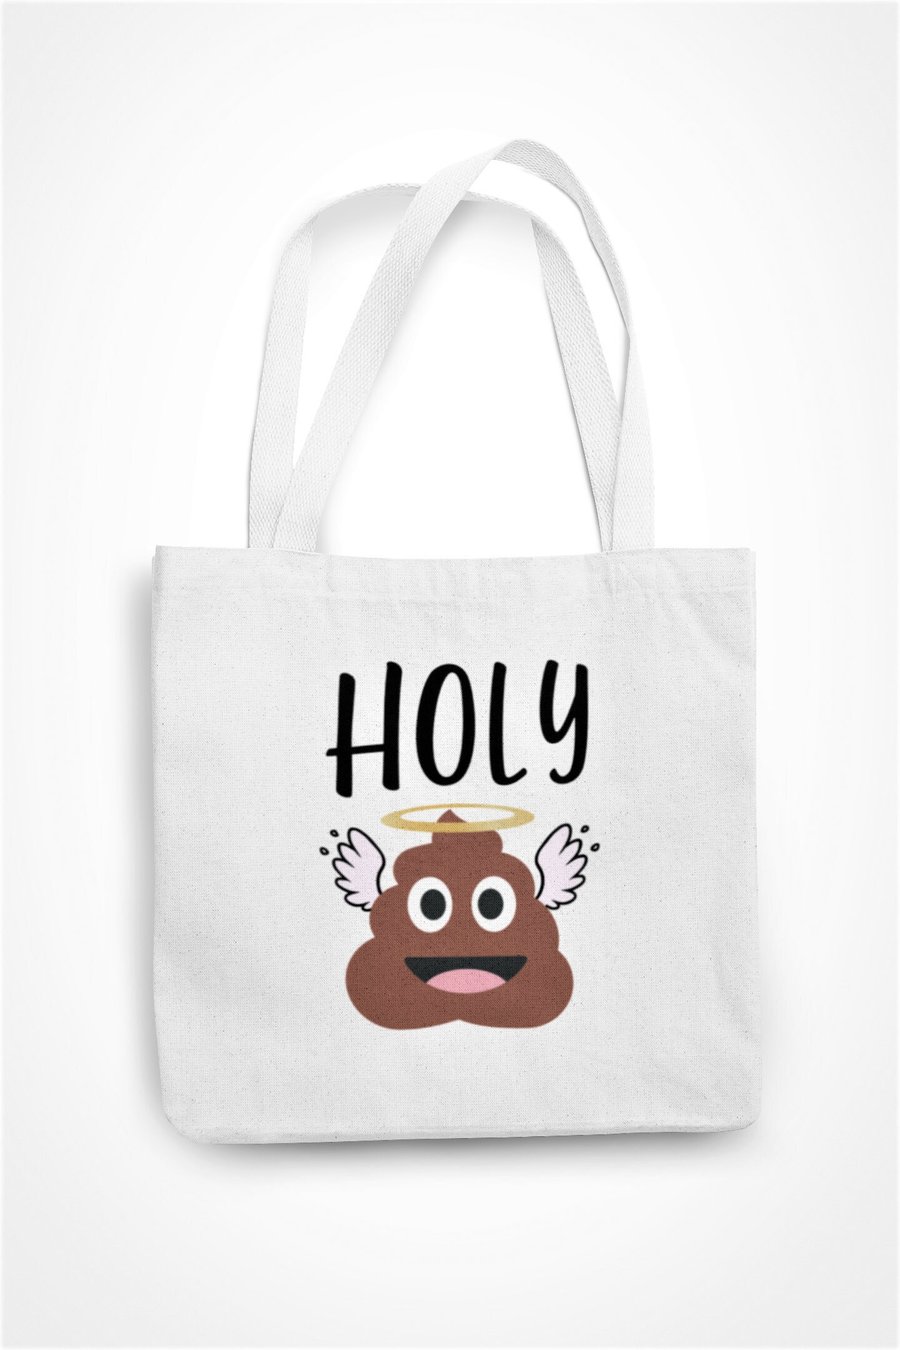 Holy POO Tote Bag Novelty Poo Emoji Eco Friendly Gift